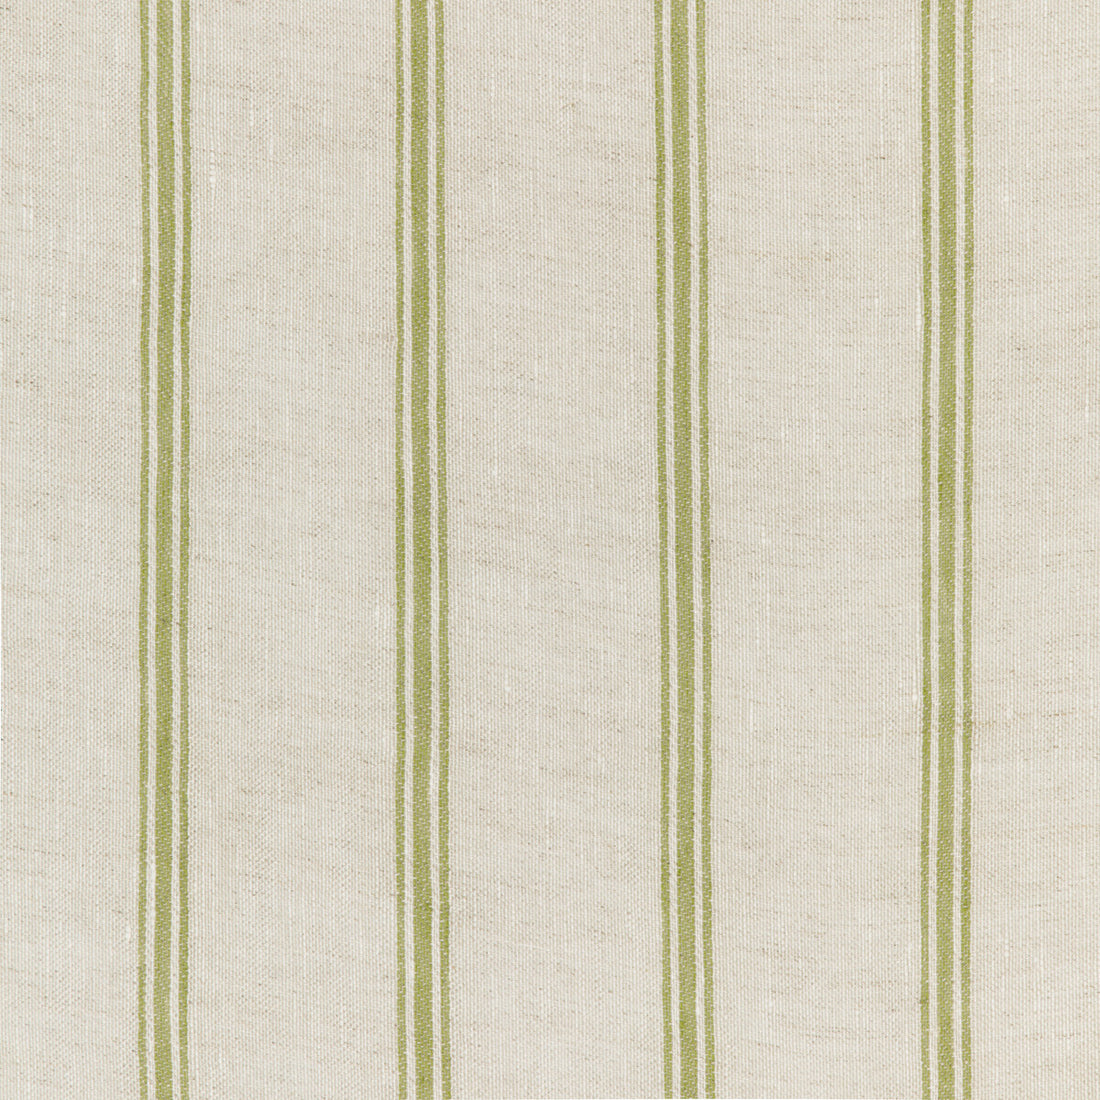 Kravet Design fabric in 4848-316 color - pattern 4848.316.0 - by Kravet Design